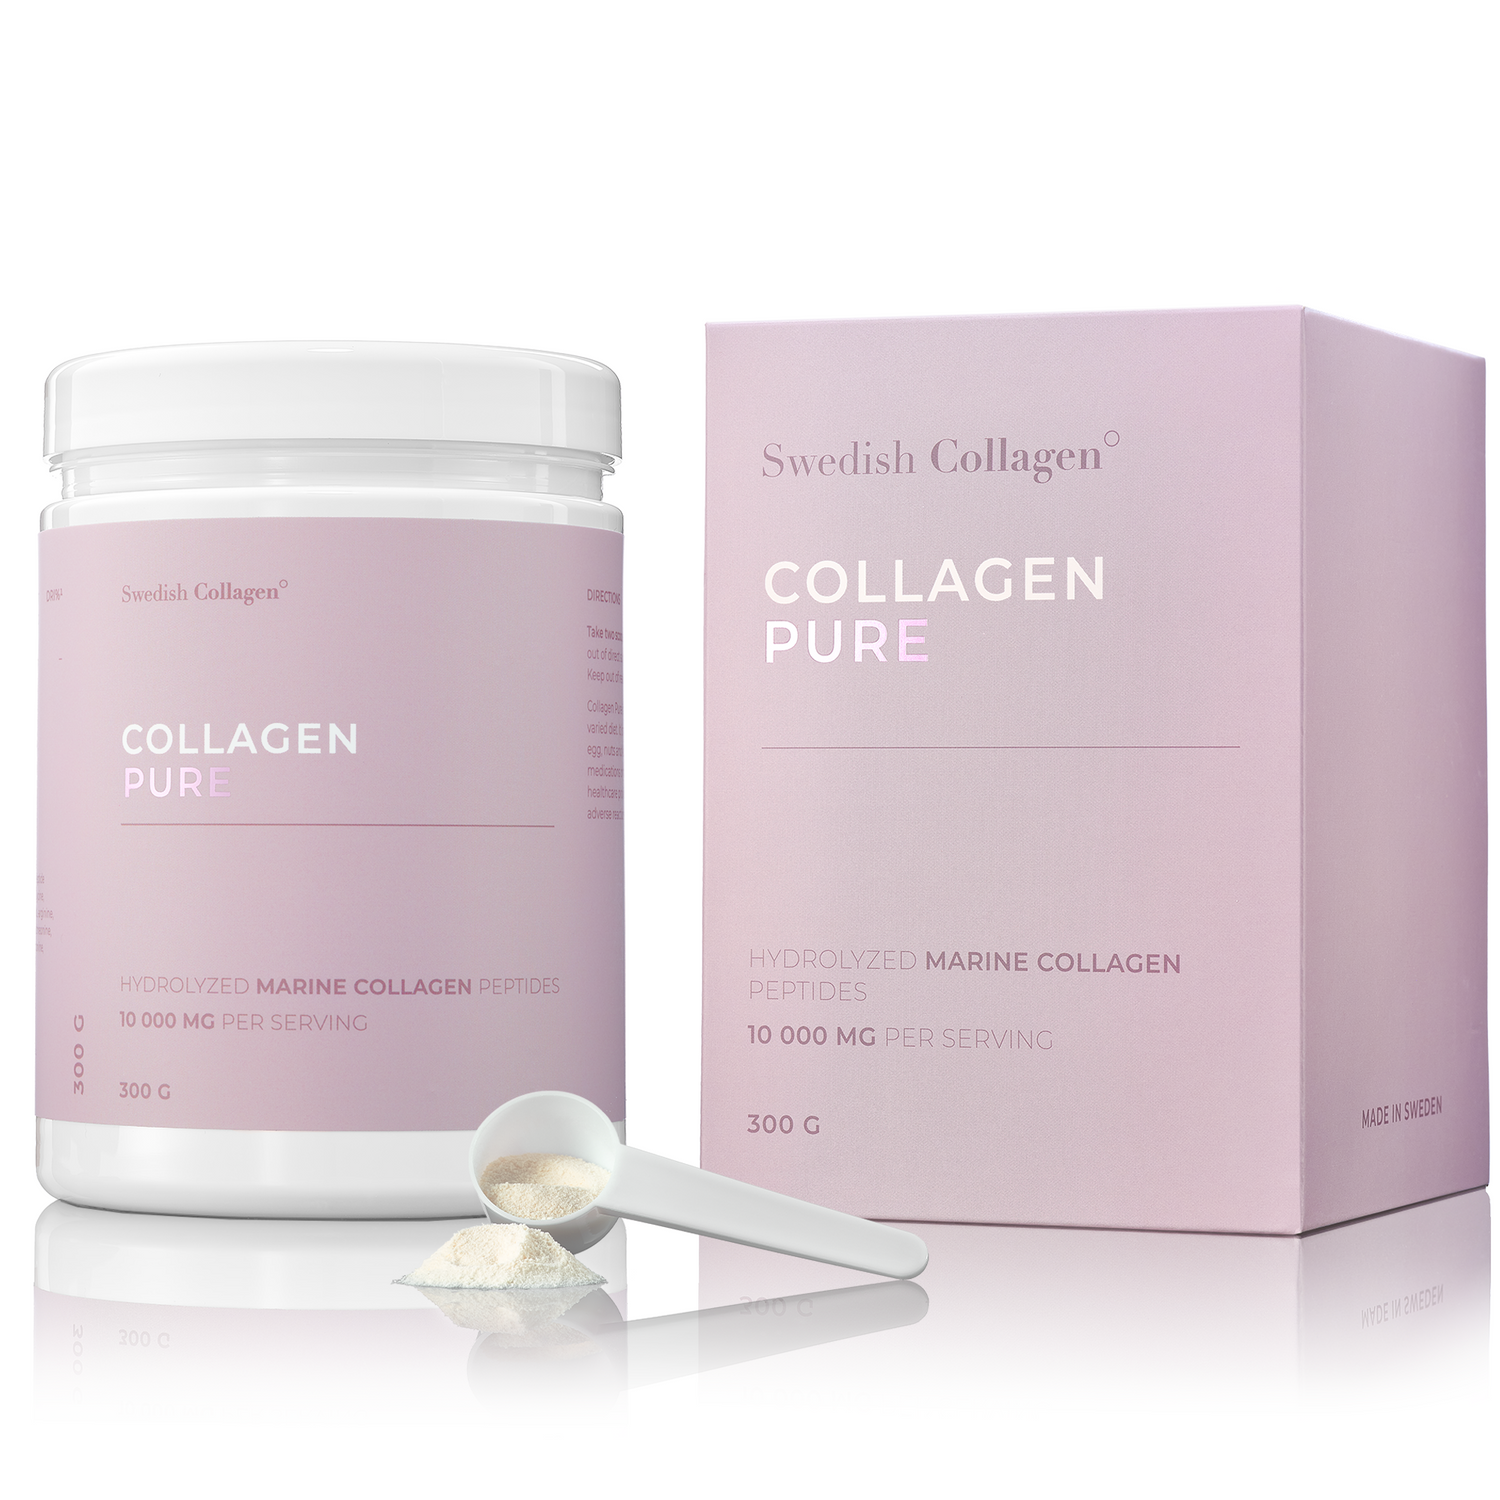 COLLAGEN PURE - Swedish Collagen Europe